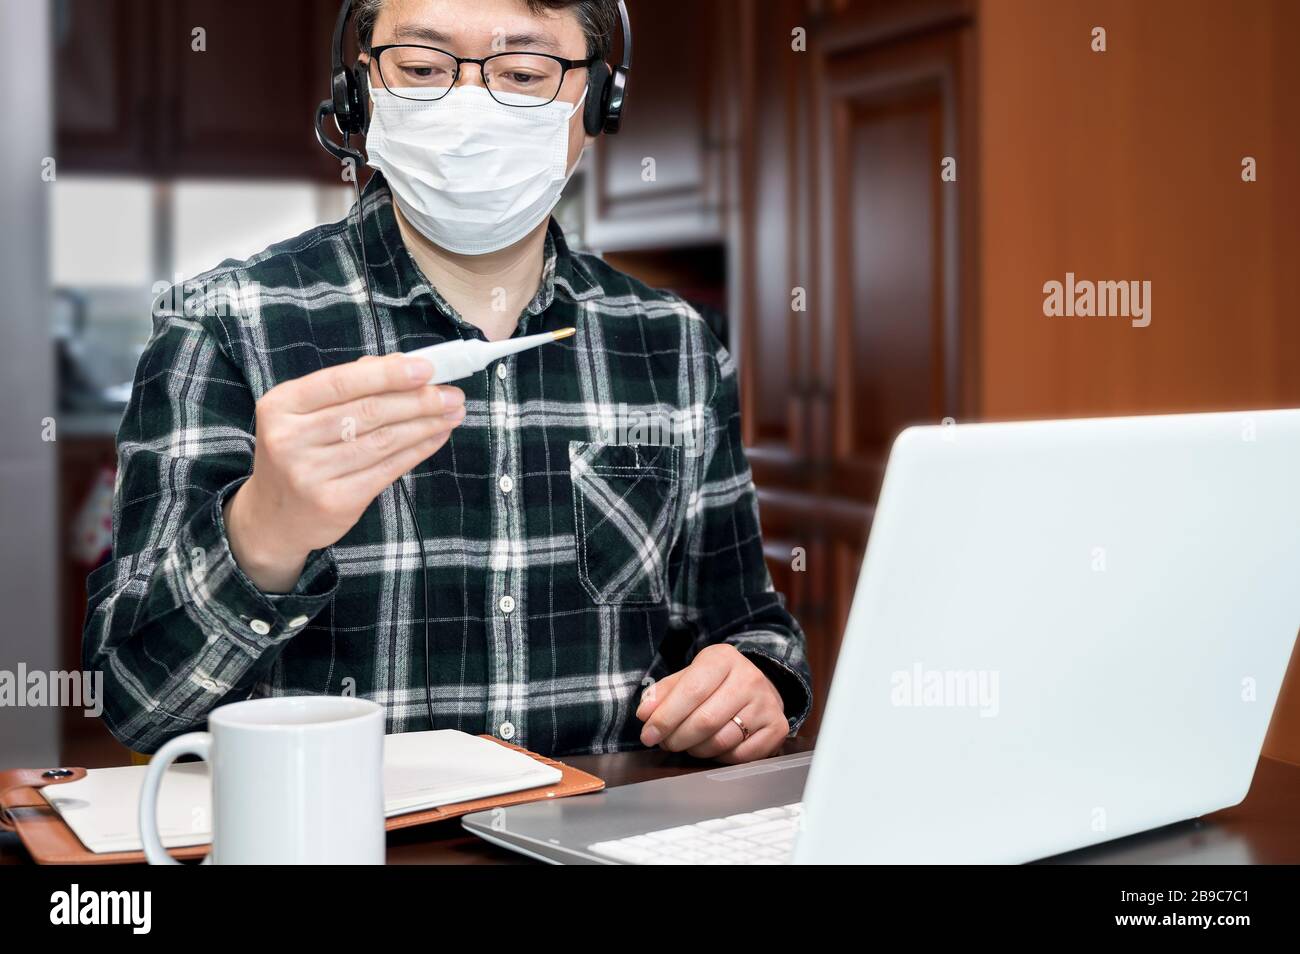 Ein asiatischer Mann, der aufgrund einer massiven Pandemie selbst isoliert und von zu Hause aus arbeitet. Ein Mann, der ein Thermometer hält, um die Körpertemperatur zu messen. Stockfoto